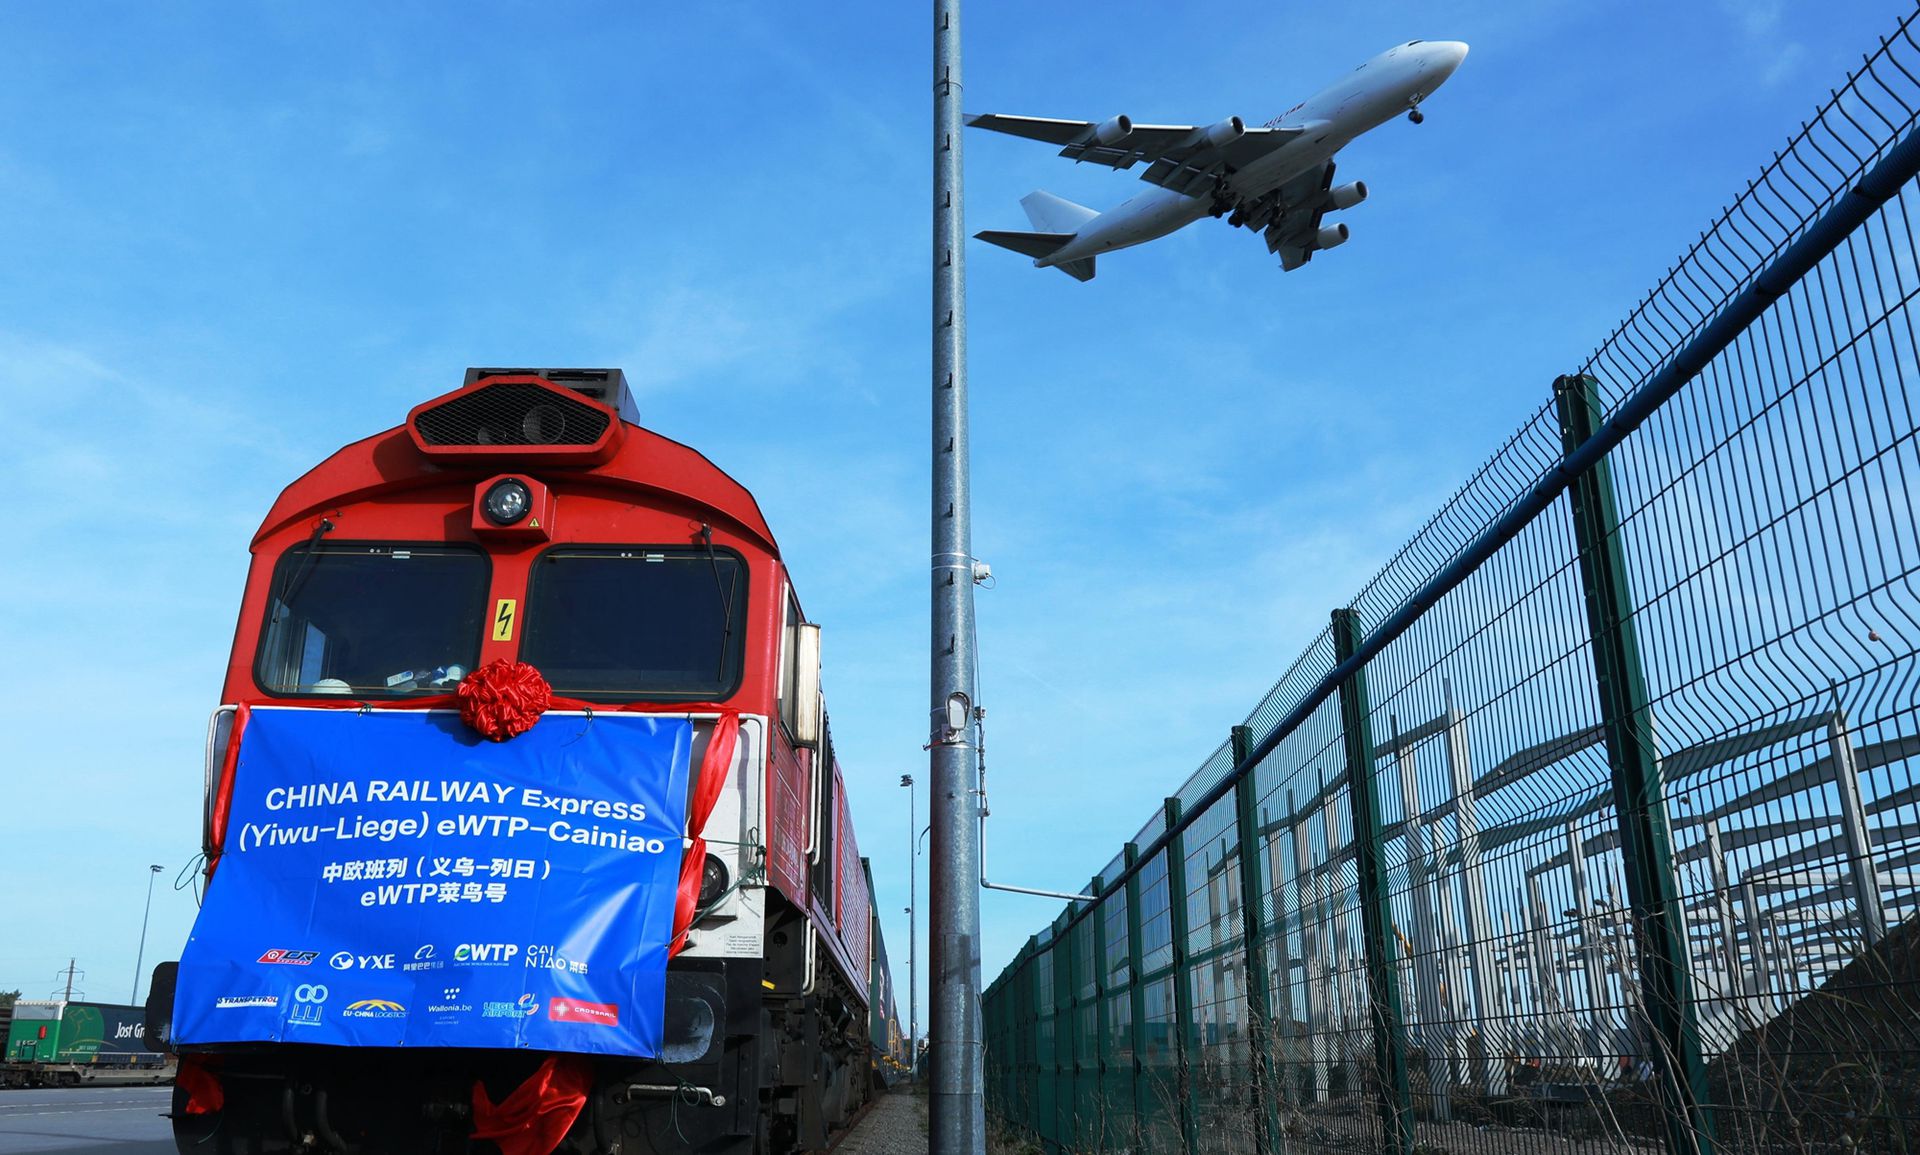 2019年10月25日，满载82个标准箱的中欧班列（义乌—列日）“世界电子贸易平台（eWTP）菜鸟号”首趟列车抵达比利时。（新华社）